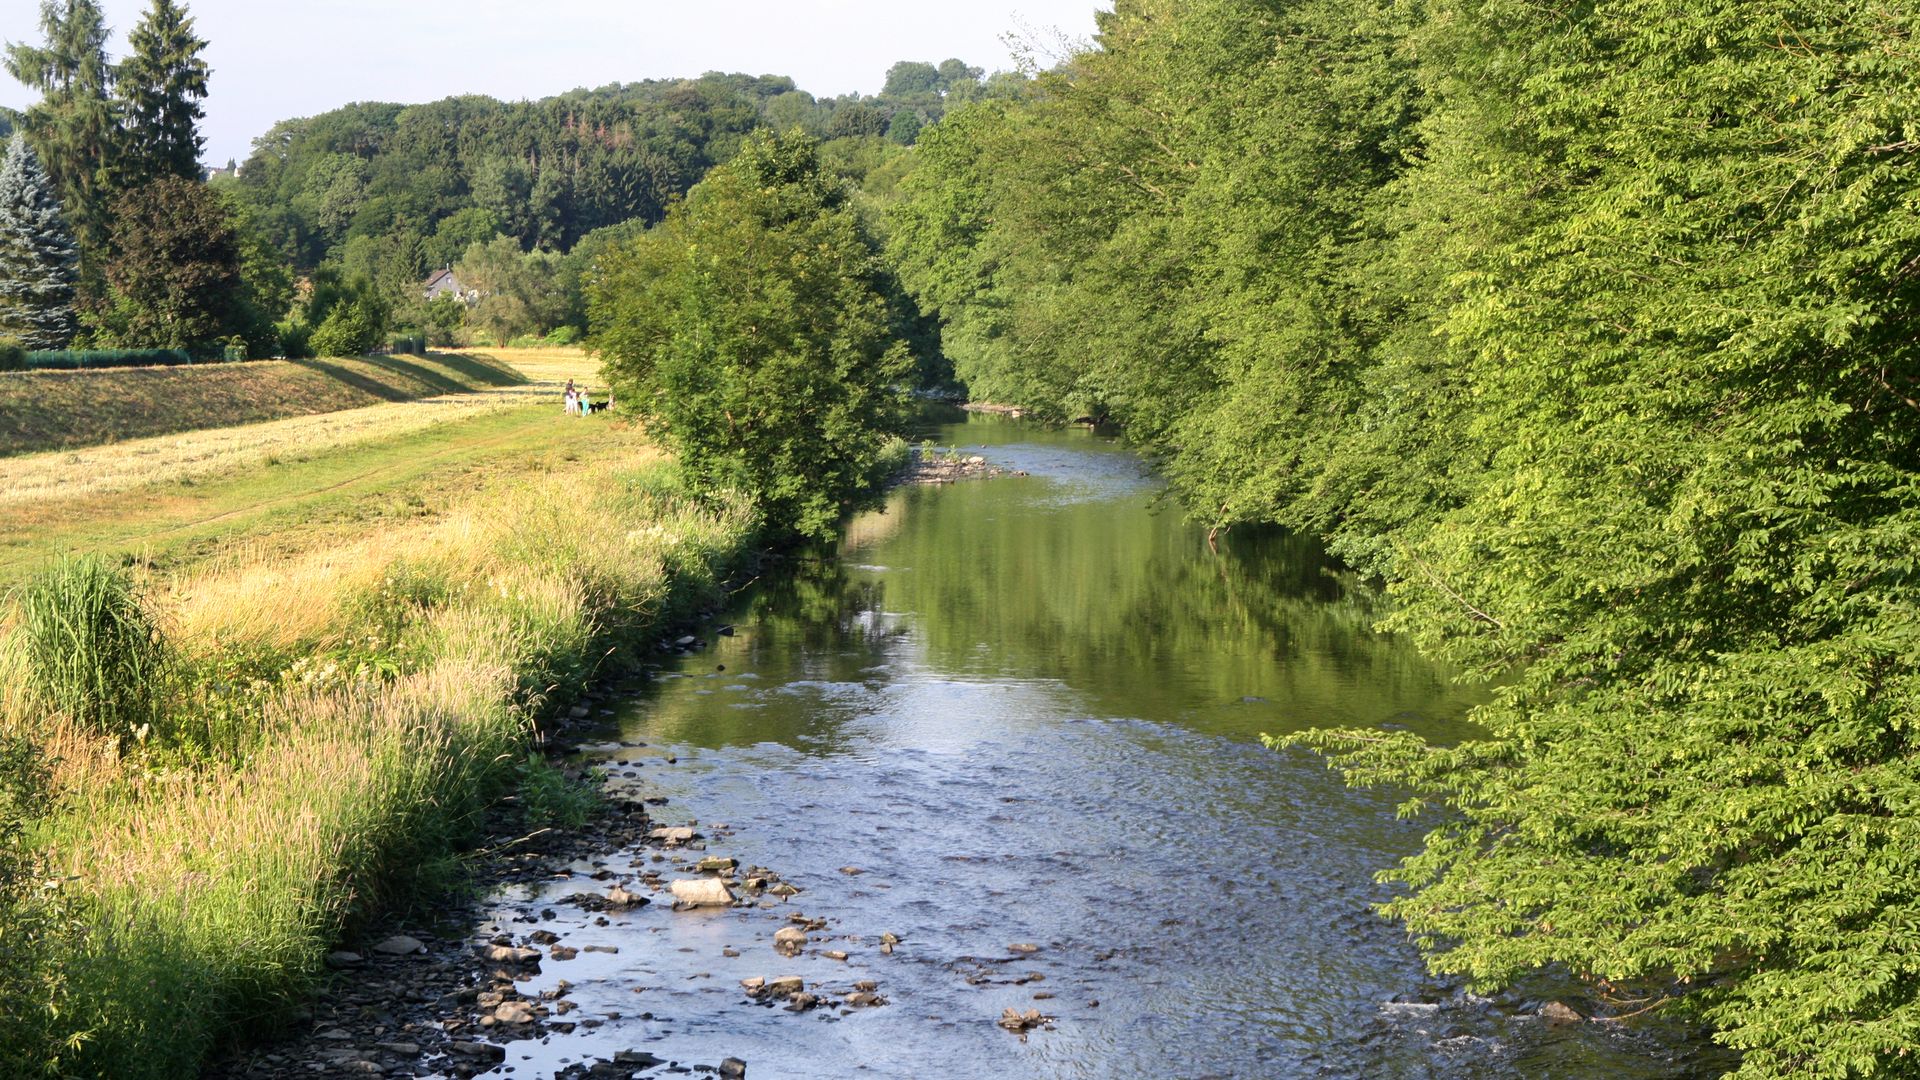 Zwischen grünen Bäumen auf der rechten Seite und einer Wiese auf der linken Seit fließt ein Fluss, die Agger.